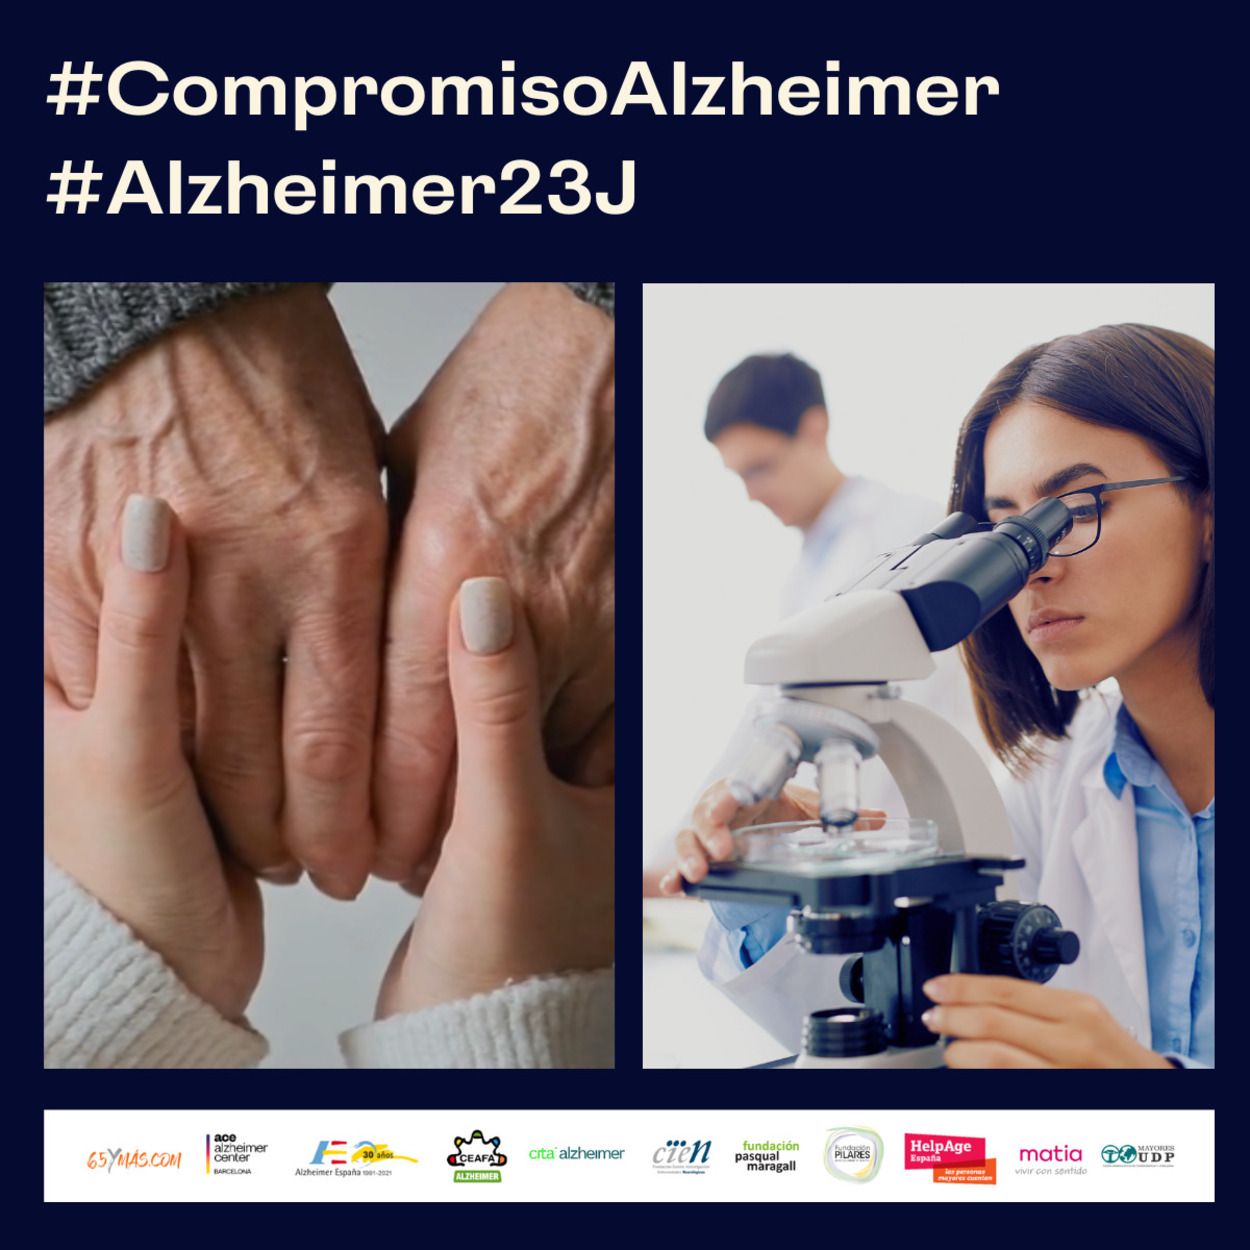 Alzhéimer, una pandemia insostenible que requiere de una actuación política decidida